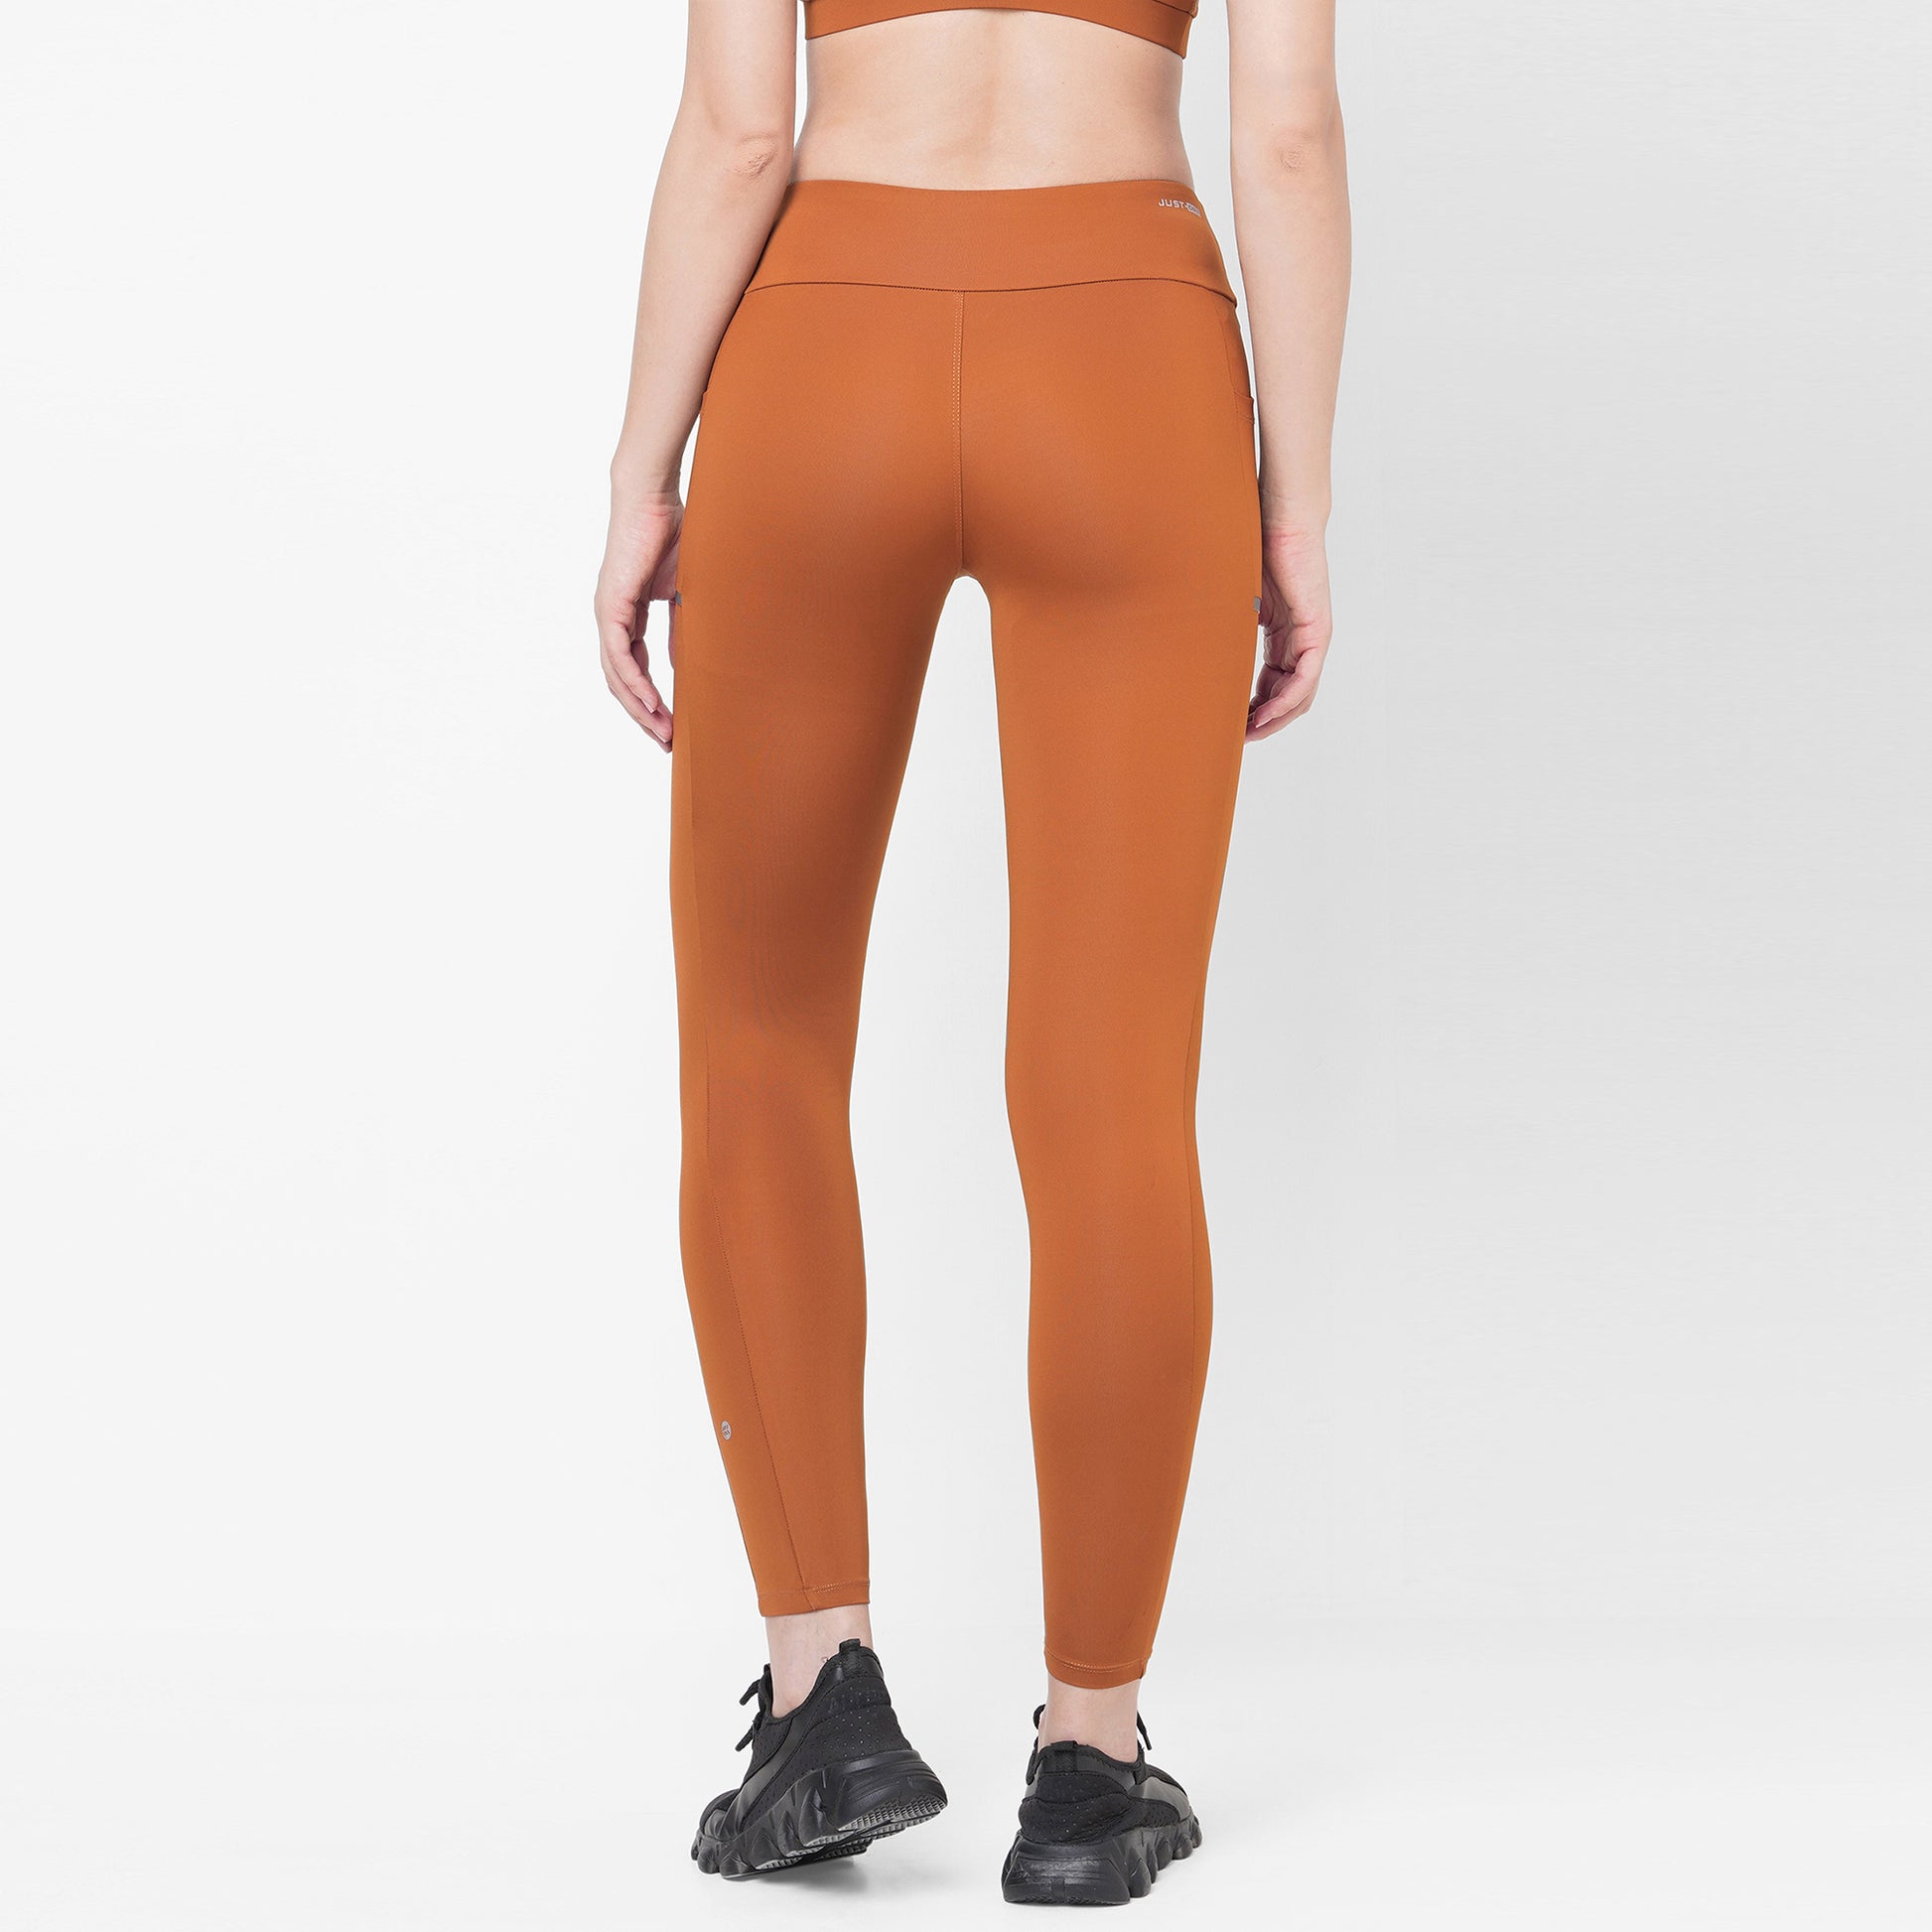 Nike Women's Yoga Luxe 7/8 Tights